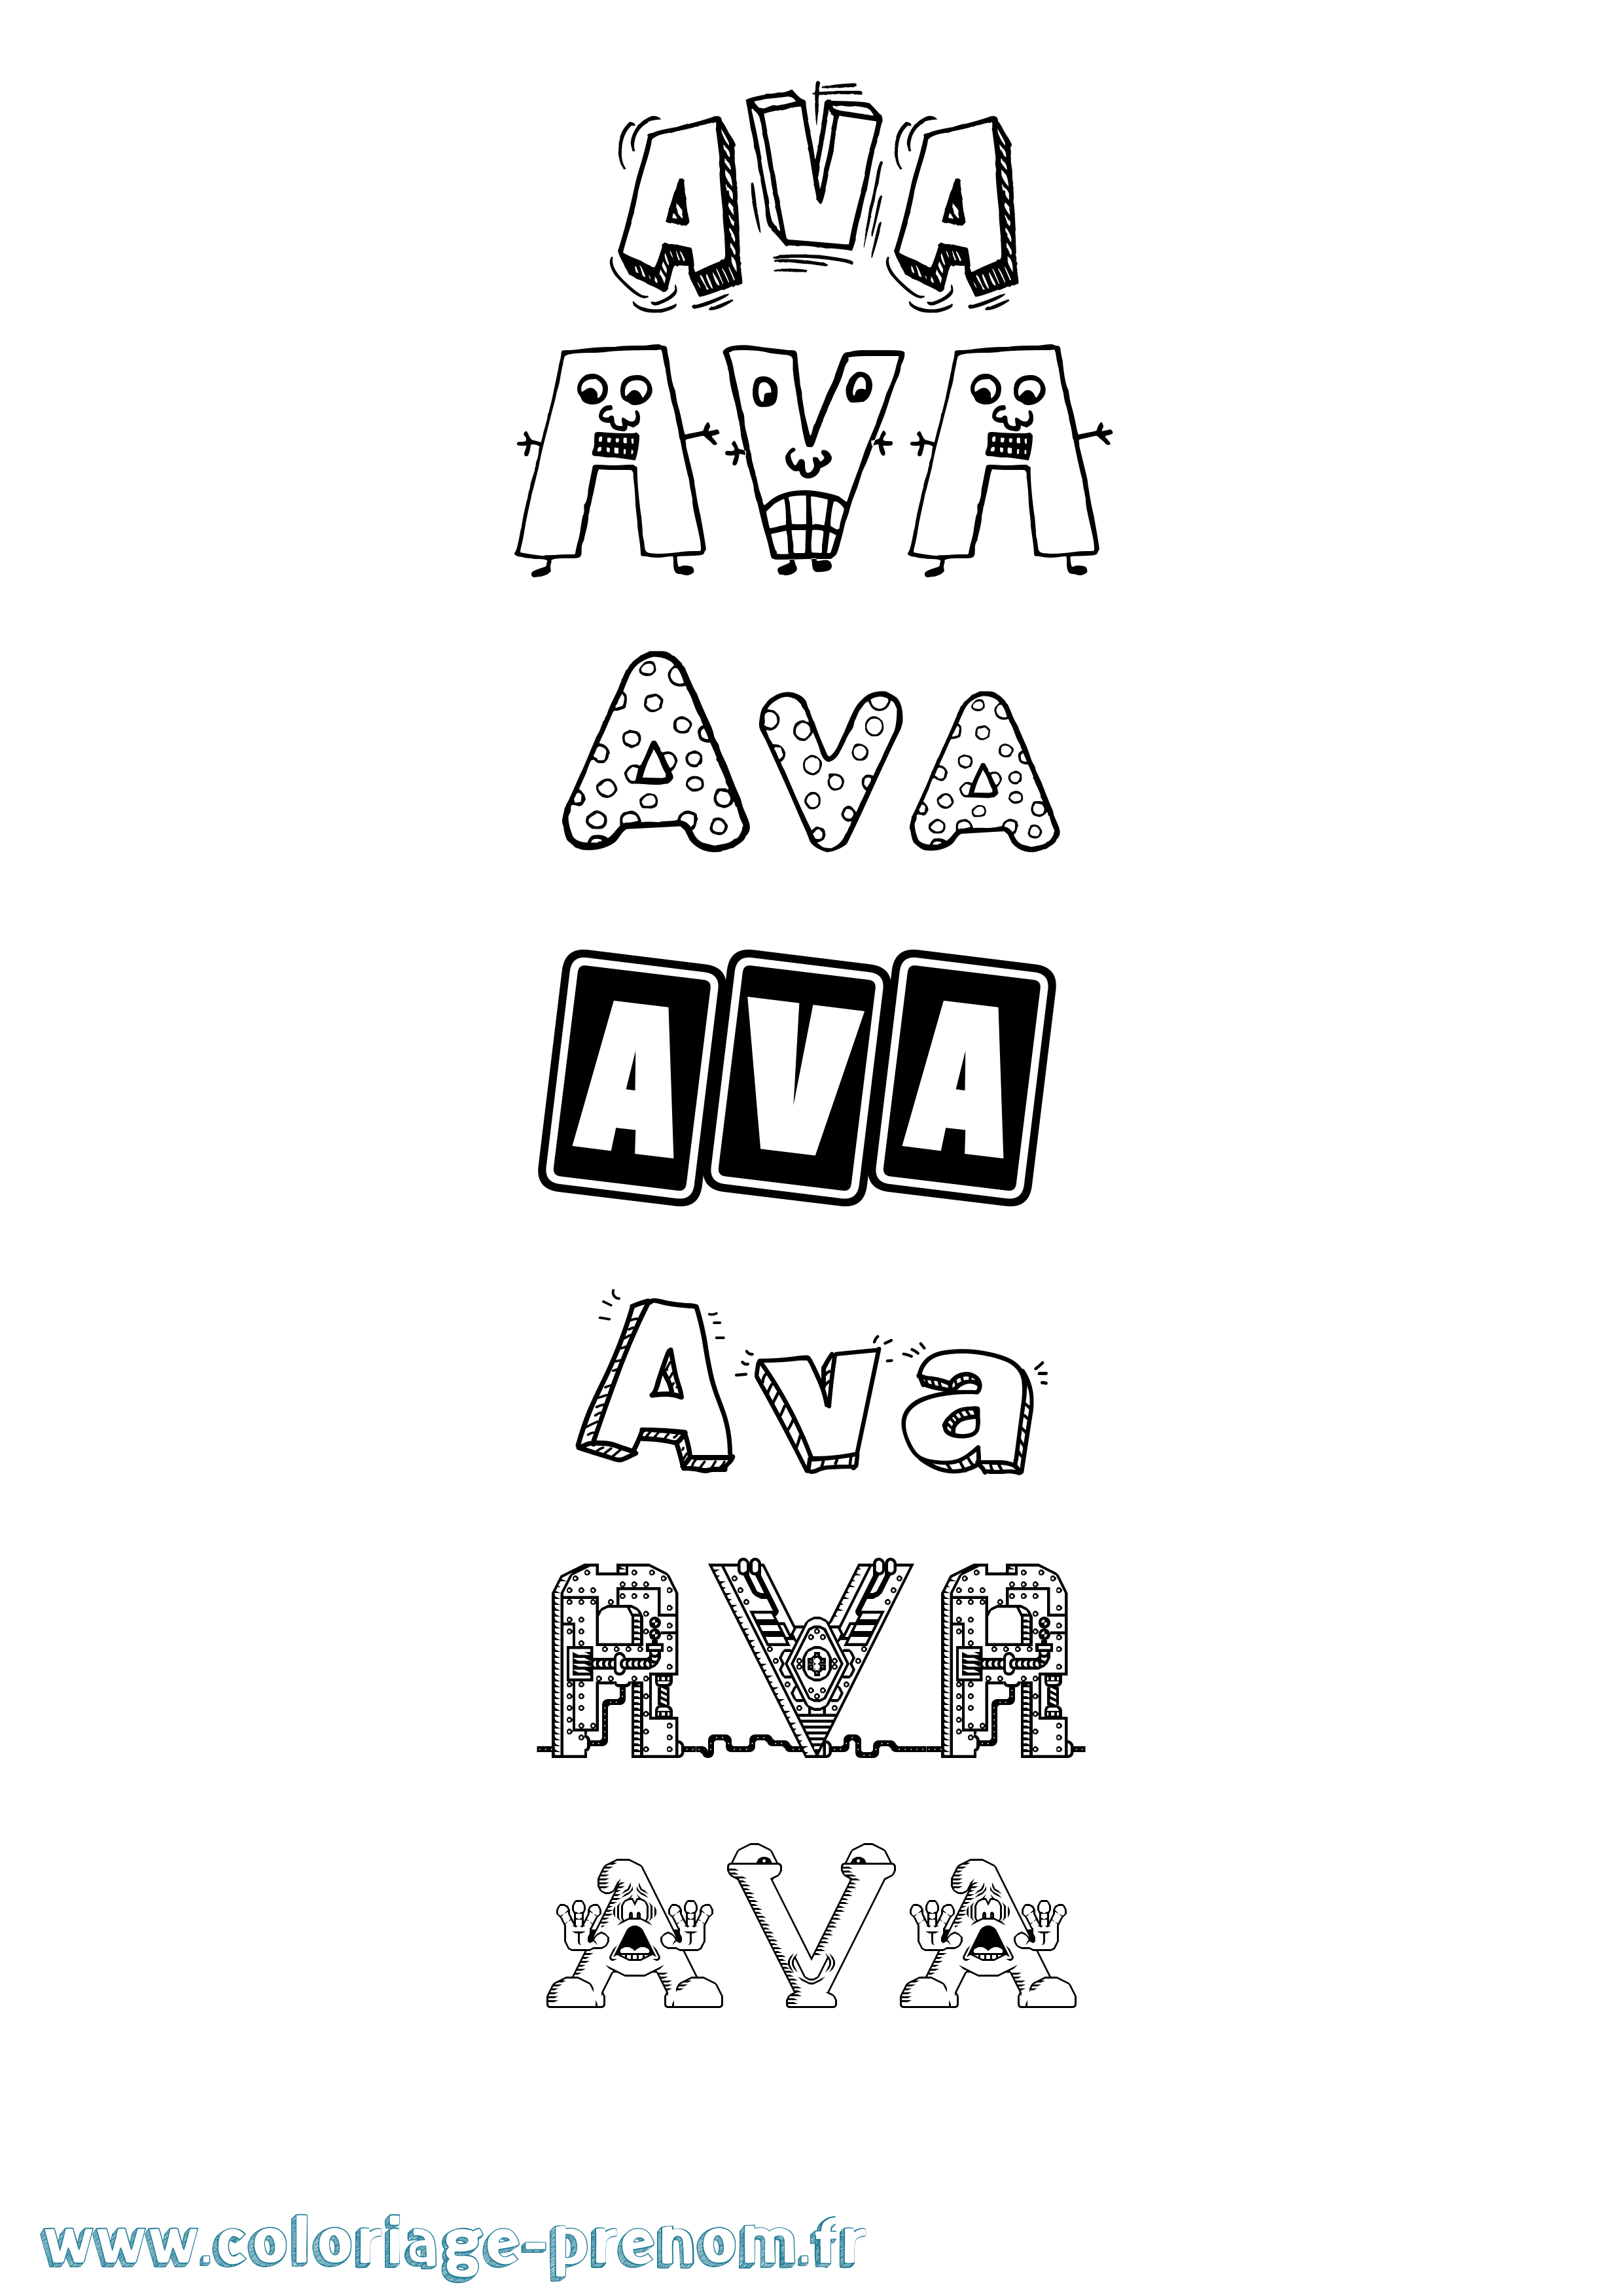 Coloriage prénom Ava Fun